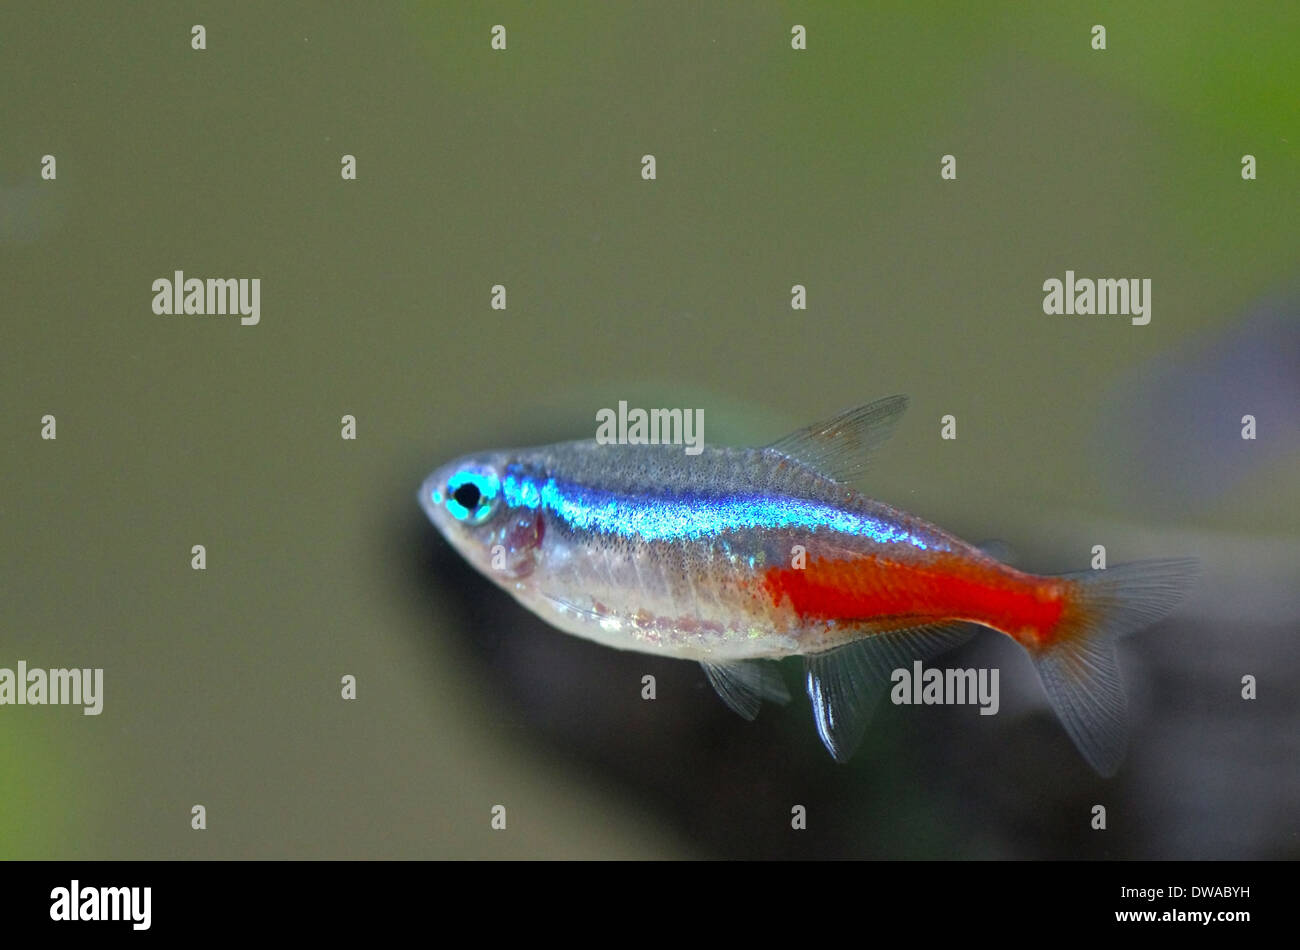 Close up image of neon fish in aquarium Stock Photo - Alamy